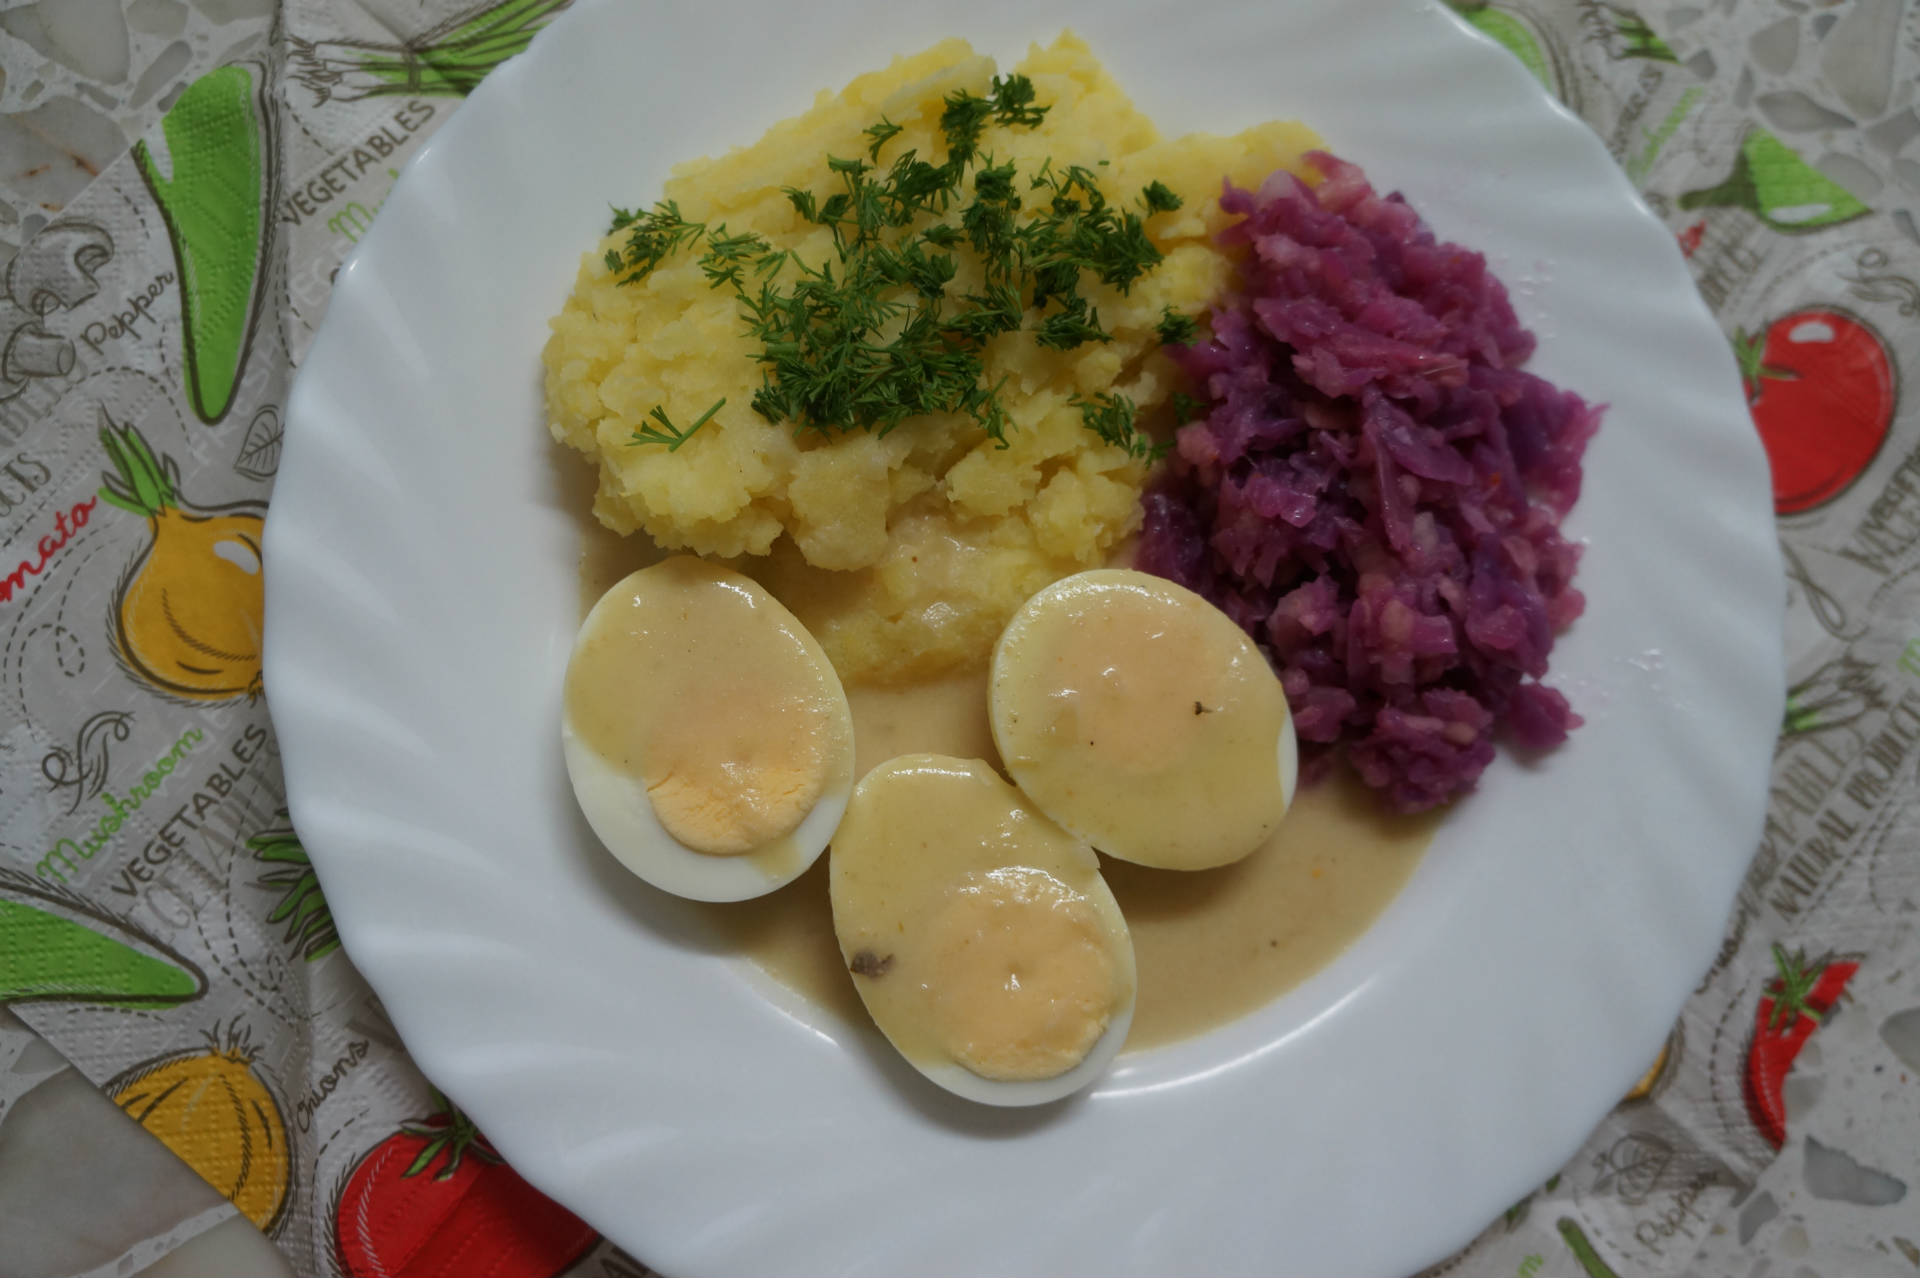 talerz z jajkami w sosie chrzanowo - musztardowym, surówka z czerwonej kapusty i ziemniakami